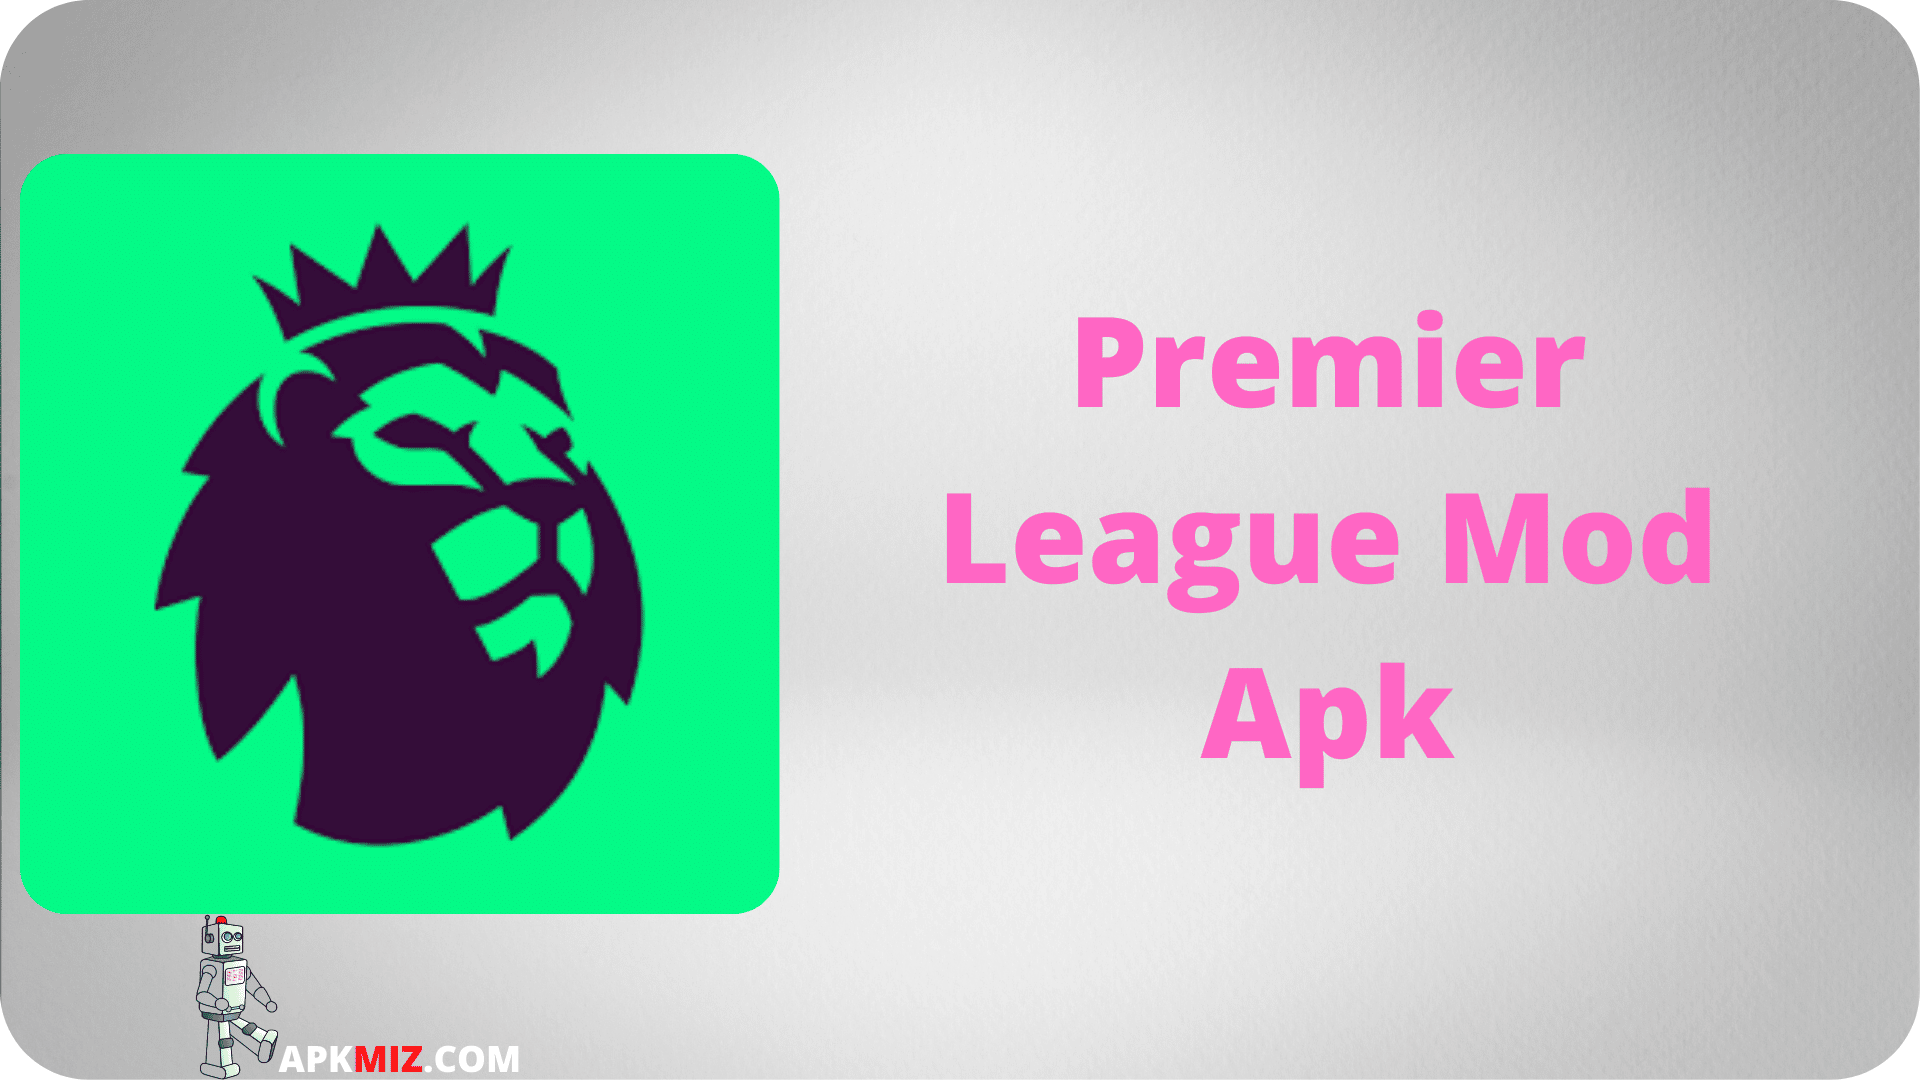 Premier League Mod Apk